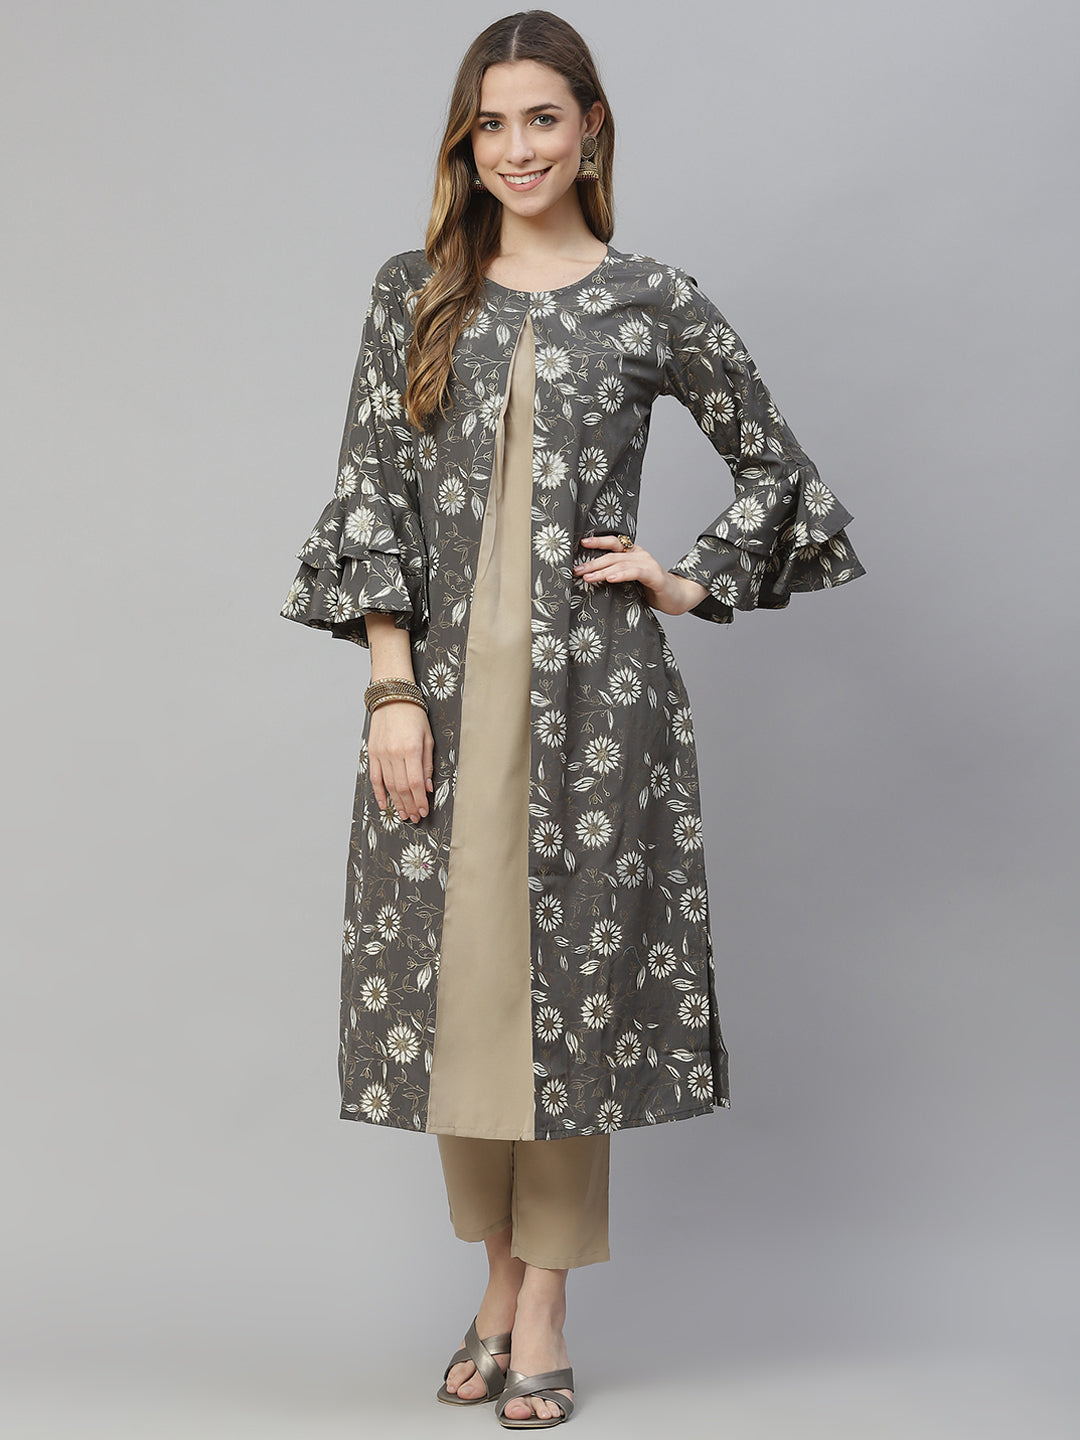 Women’s grey floral printed crepe kurta and pant set by Ziyaa – (2 pcs set)